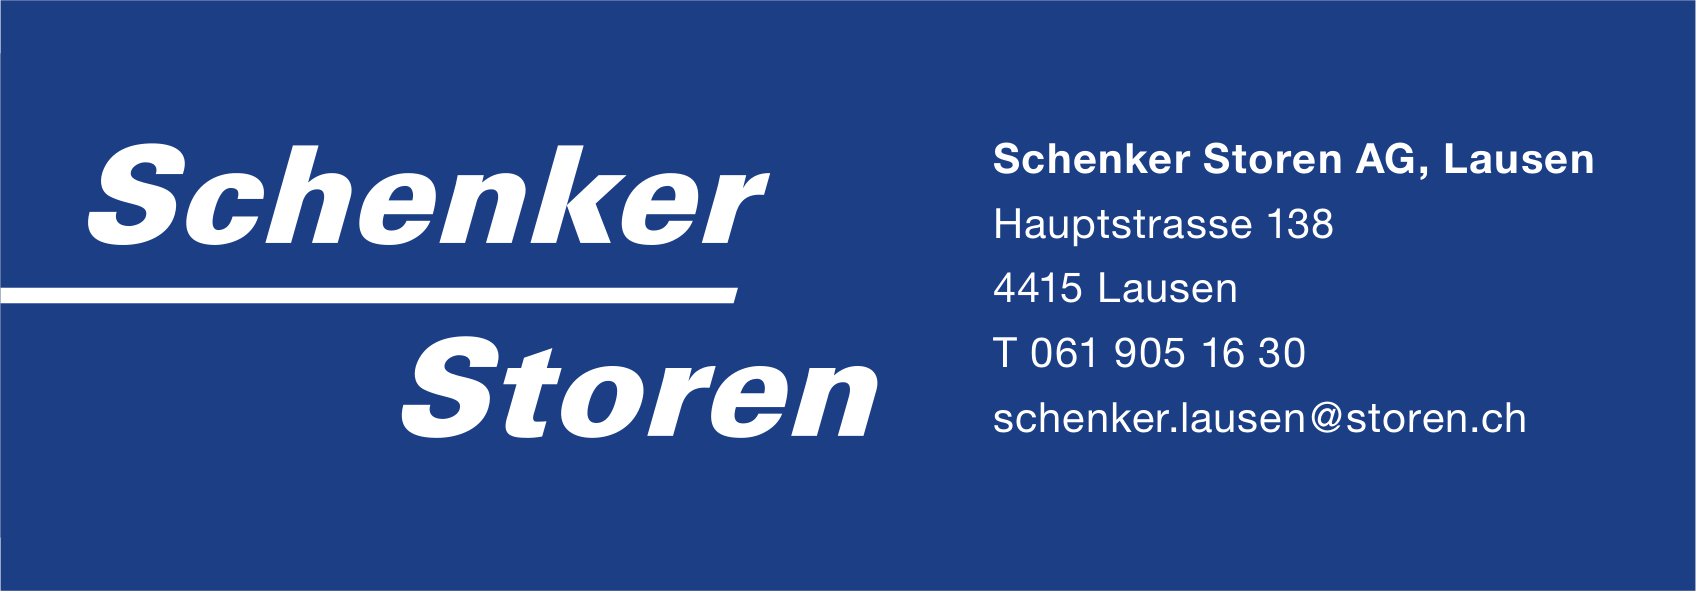 Schenker Storen AG, Lausen